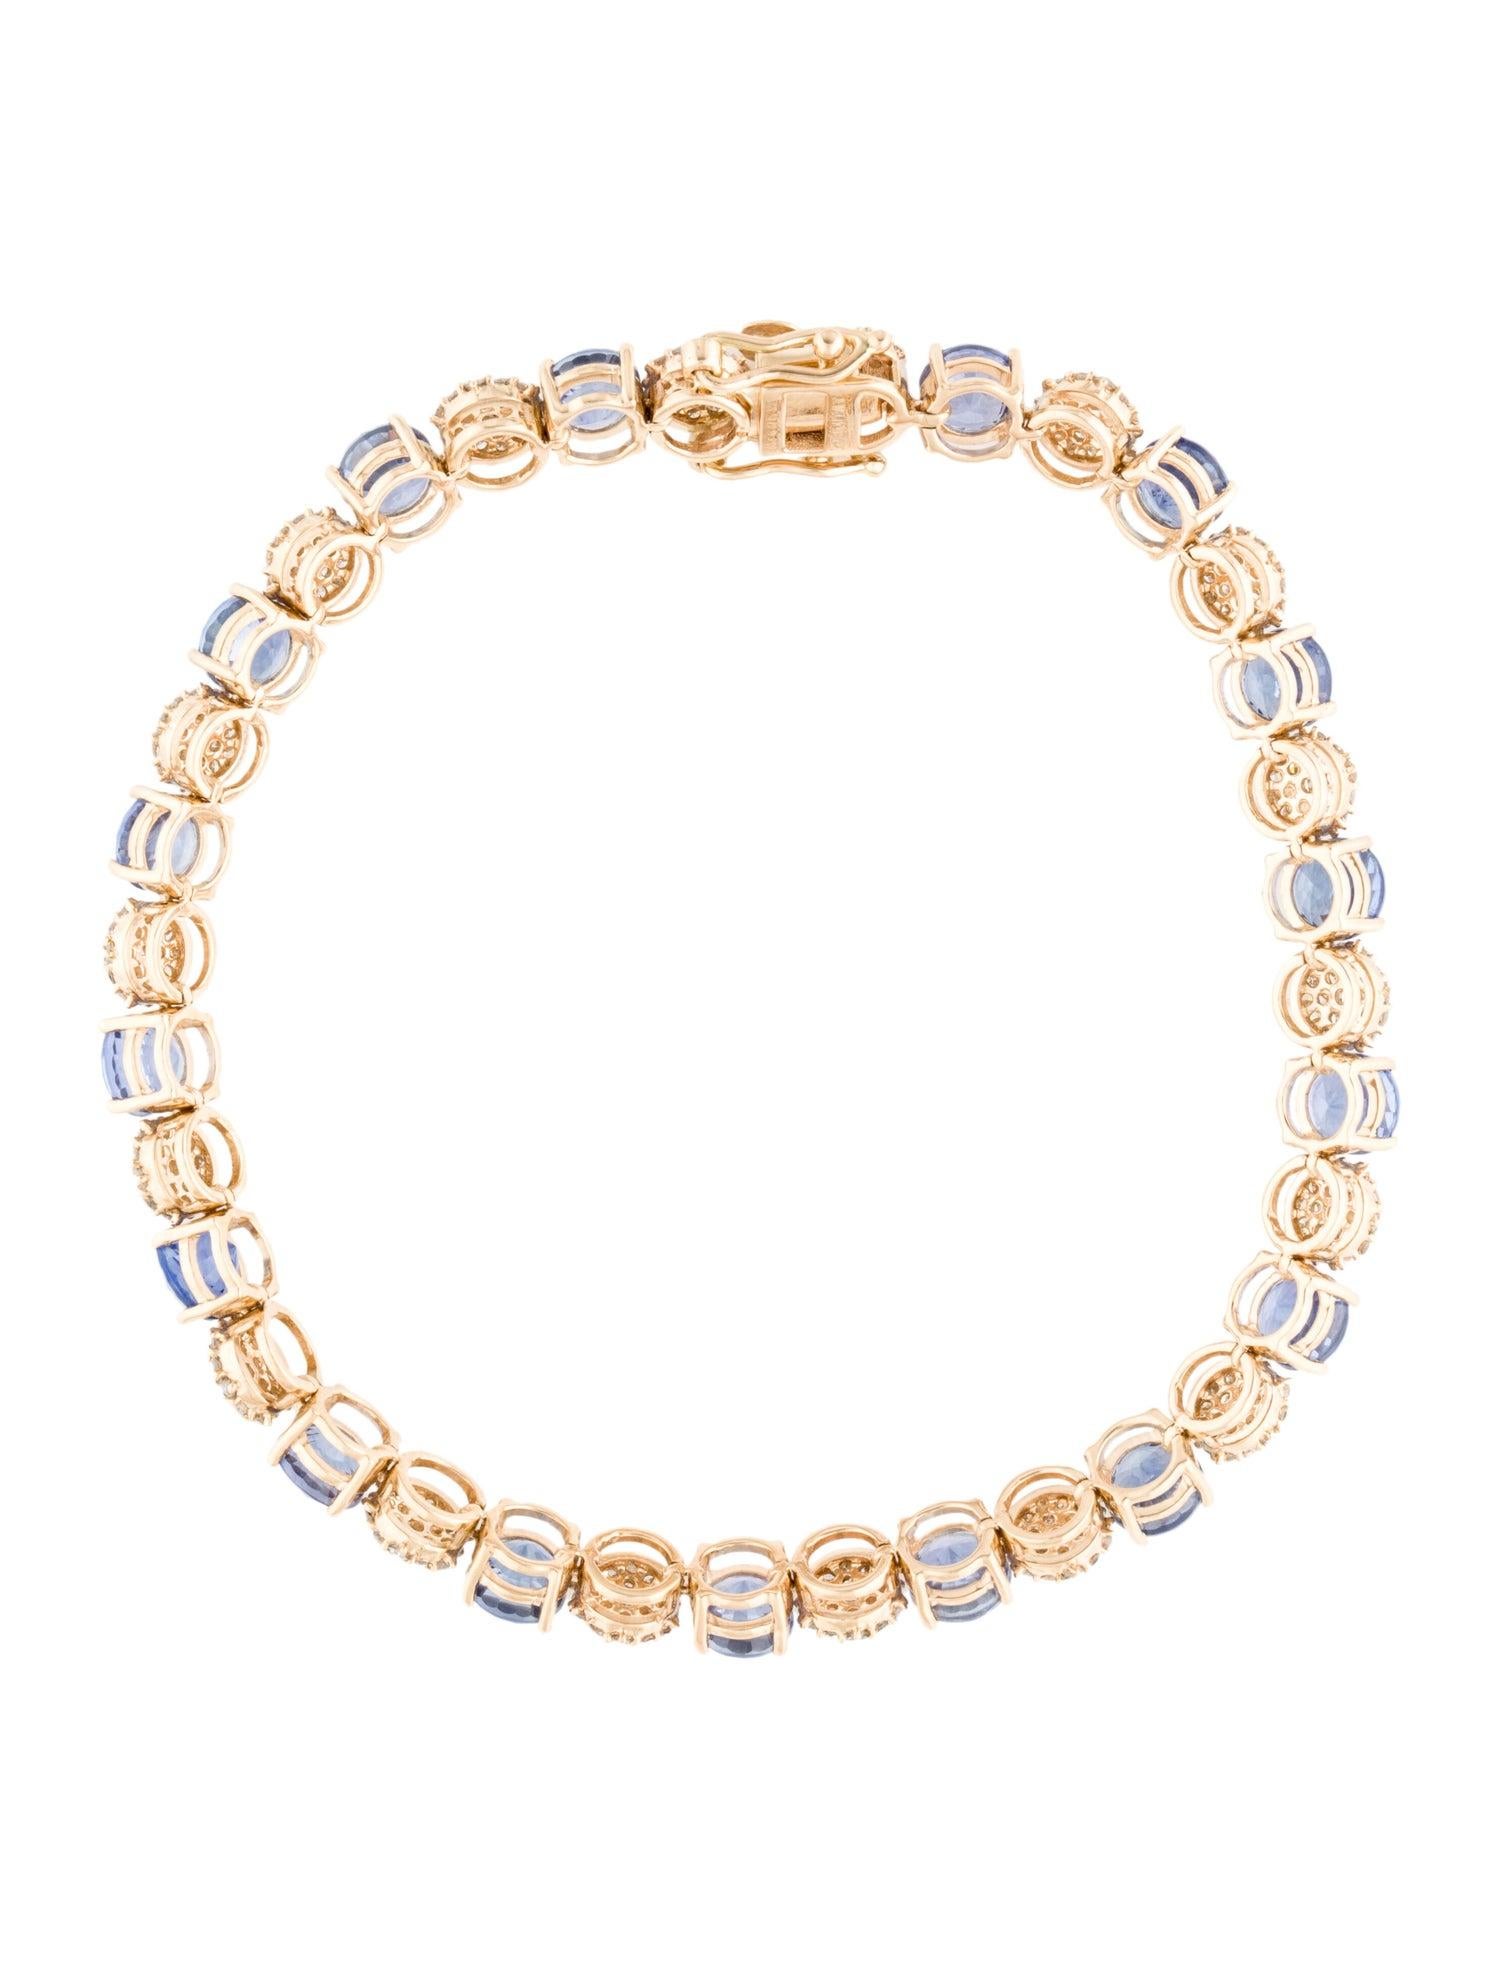 Women's 14K Sapphire & Diamond Tennis Bracelet - Elegant Sparkle, Timeless Glamour For Sale